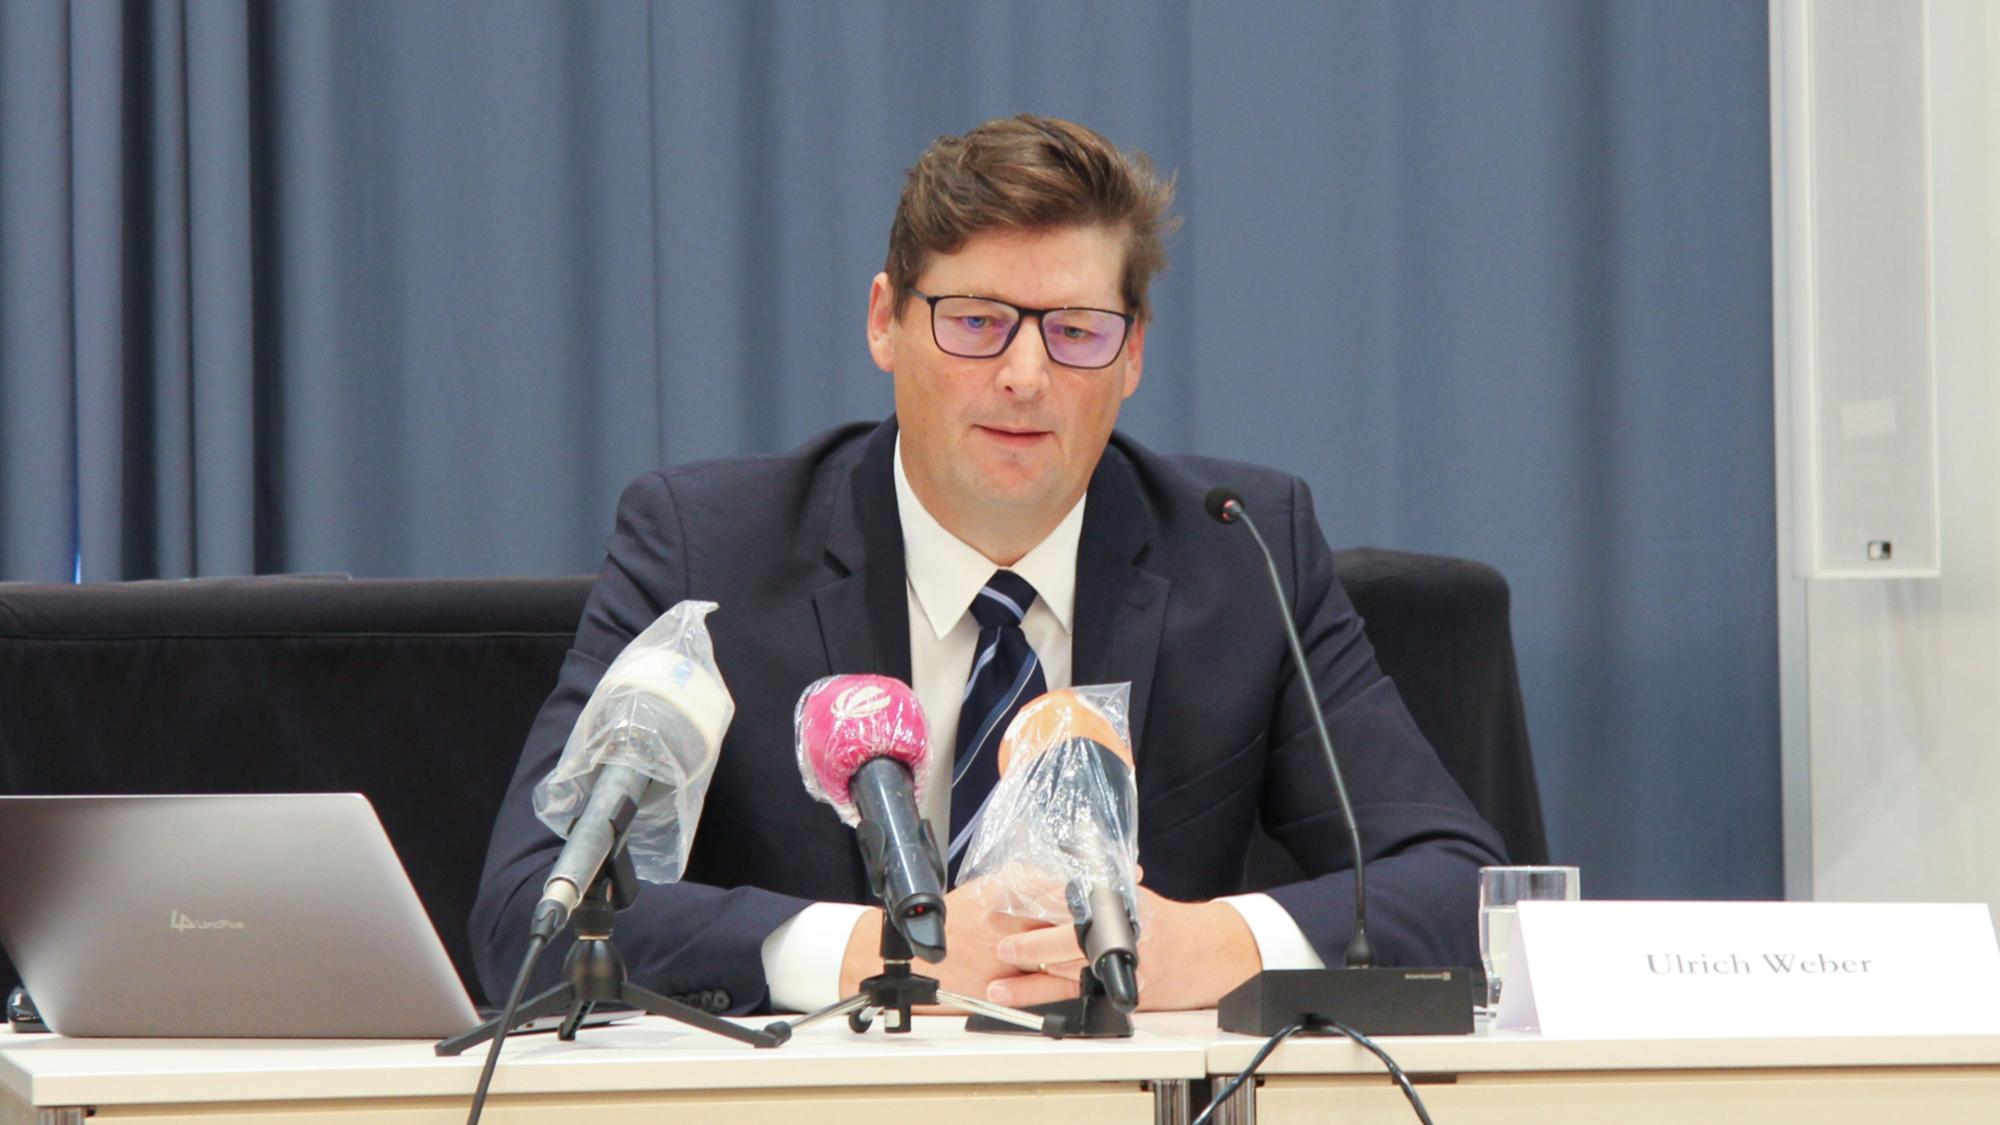 Rechtsanwalt Weber bei der Pressekonferenz am 7 Oktober 2020 in Mainz